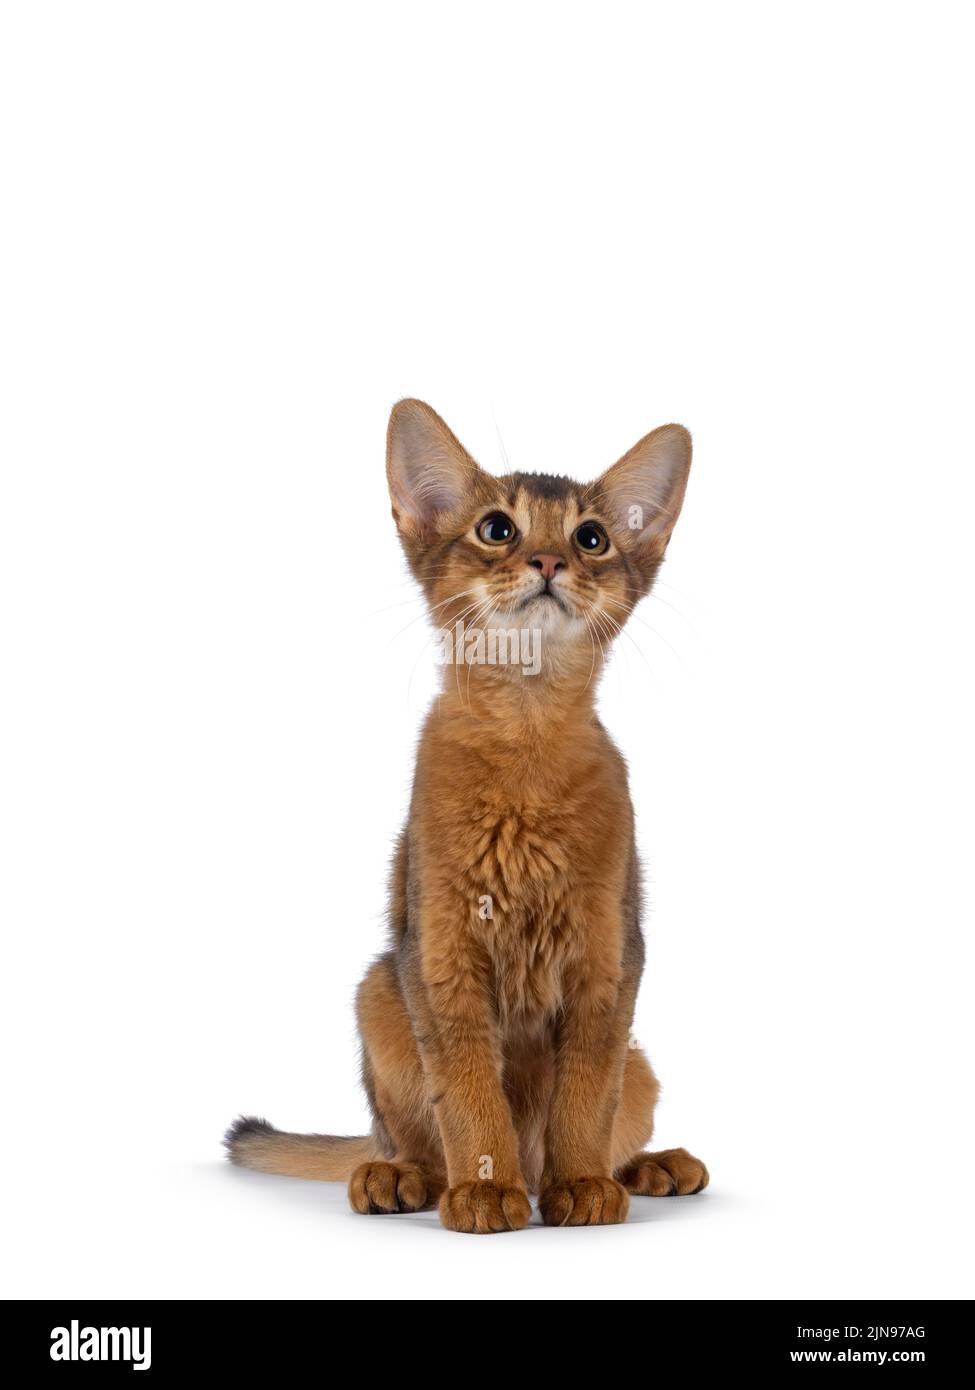 Adorable chaton somalien, assis face à l'avant. Regarder vers le haut et au-dessus de l'appareil photo. Isolé sur un fond blanc. Banque D'Images